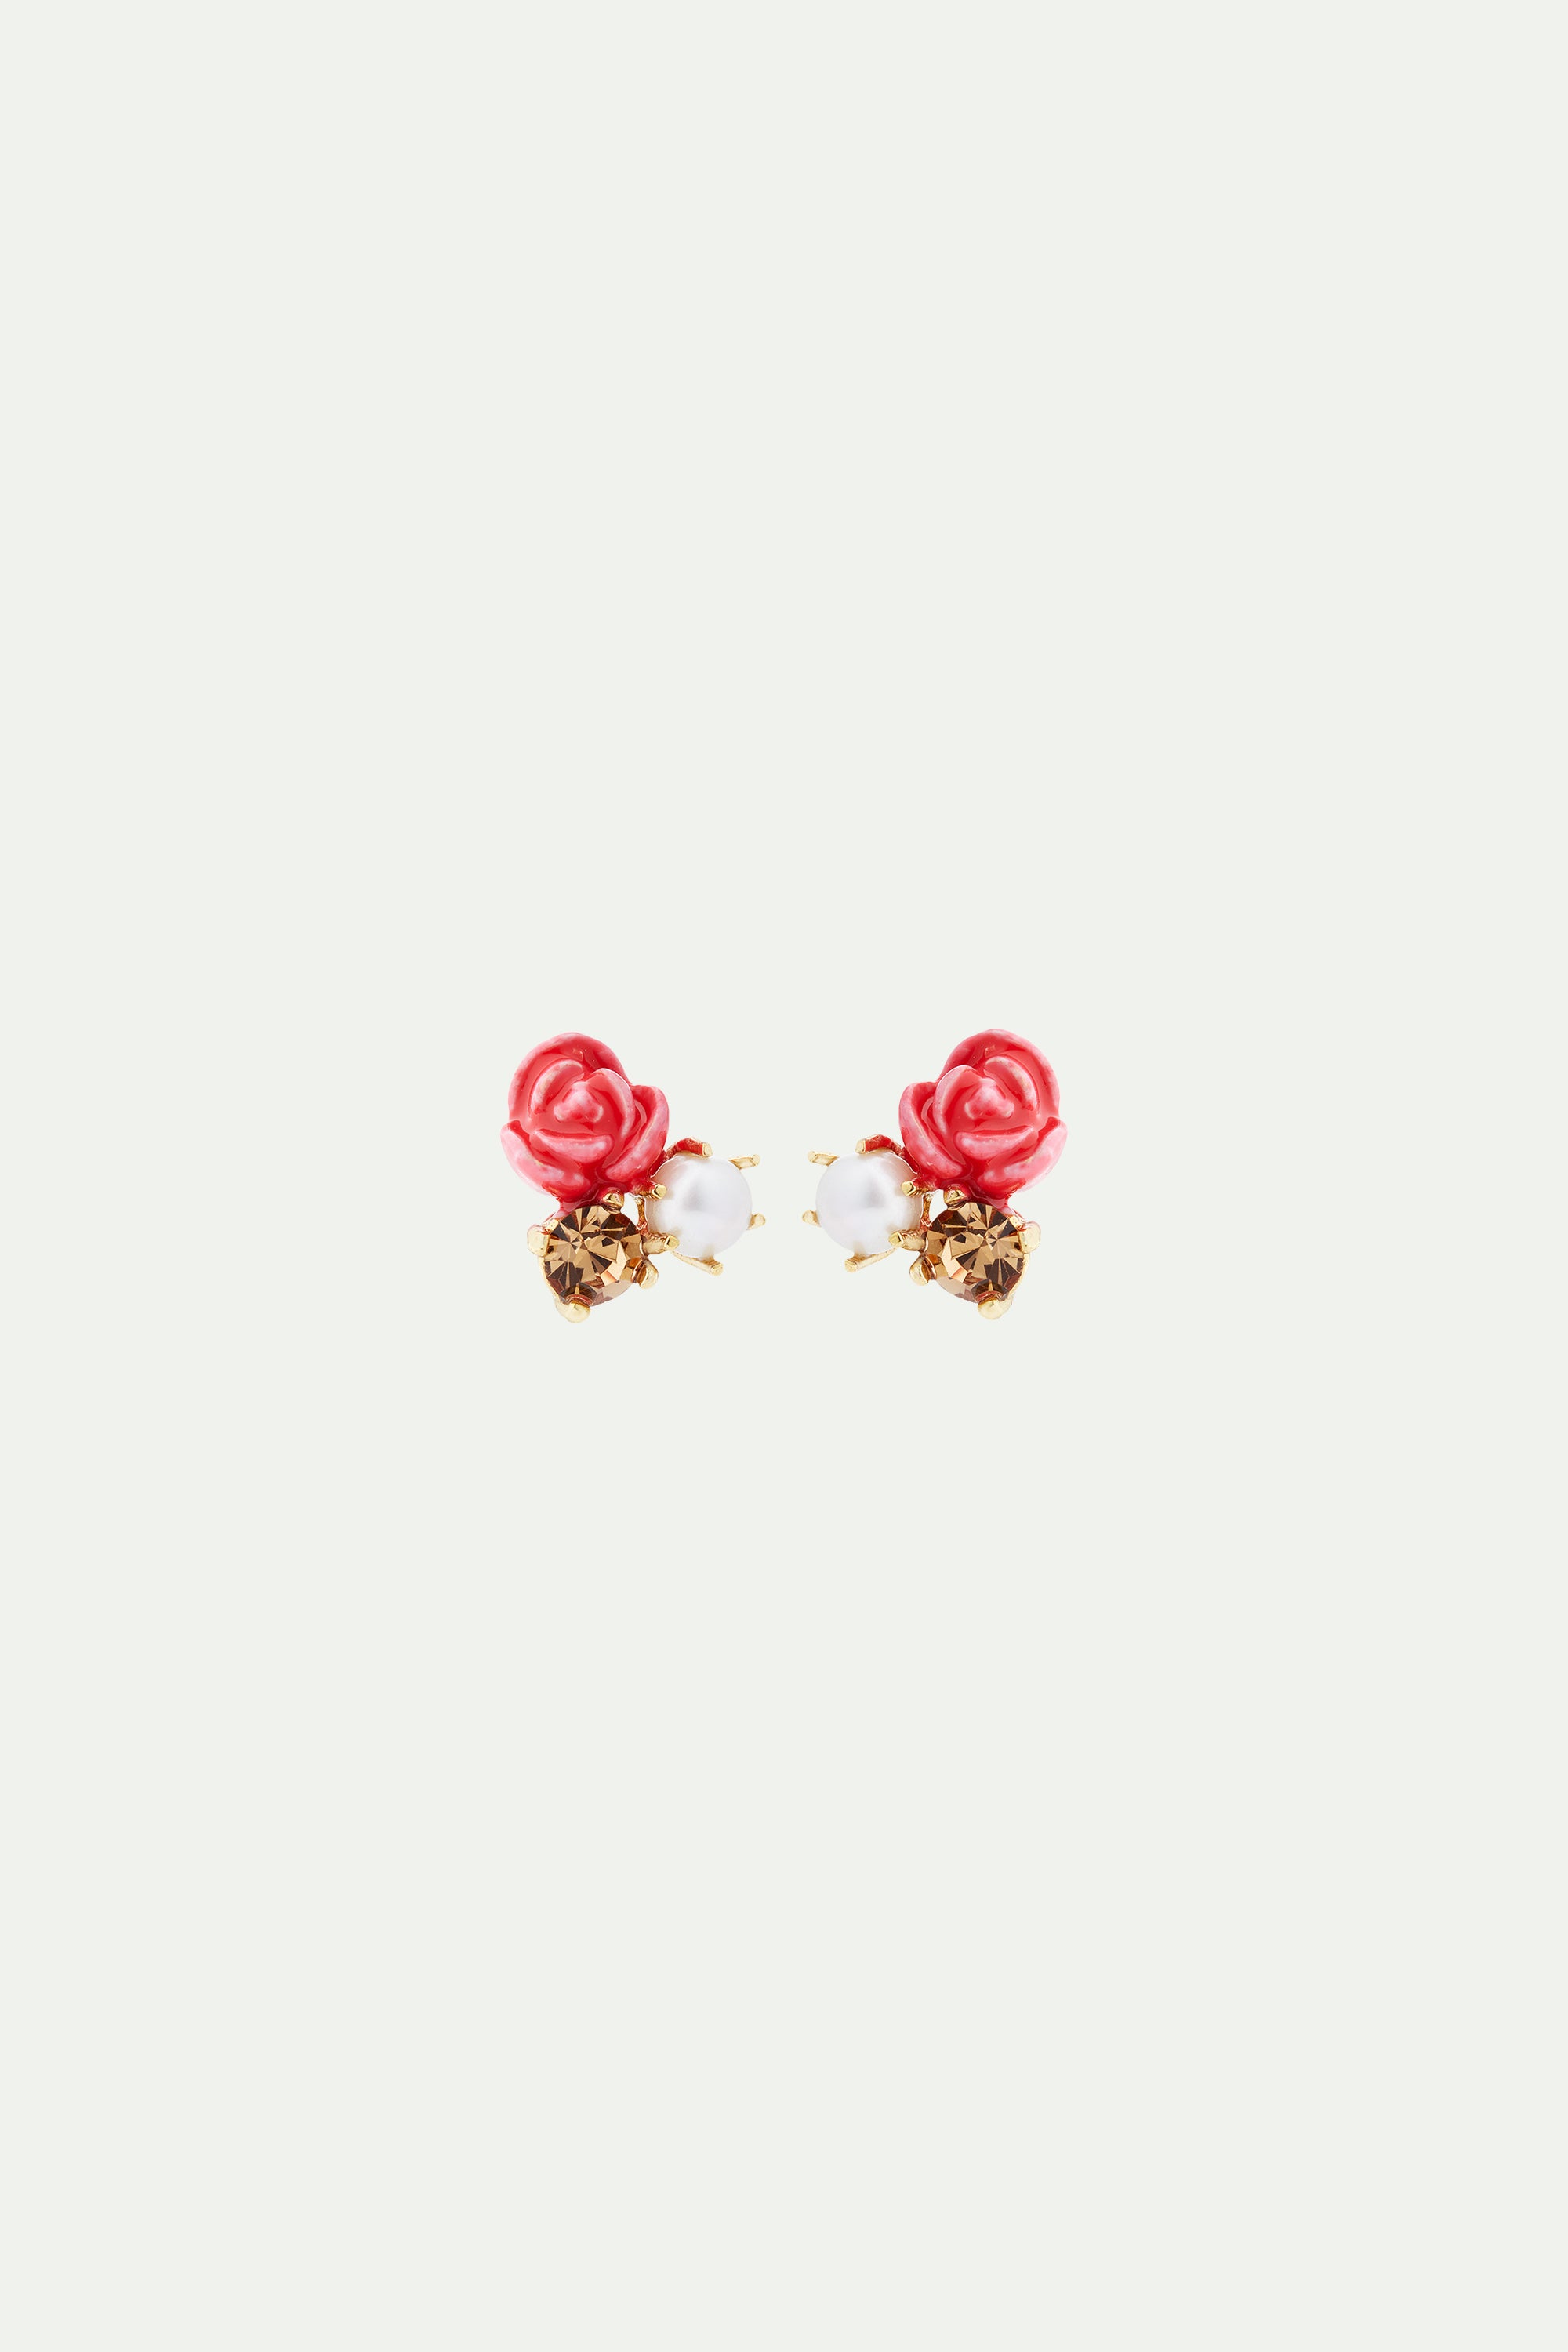 Boucles d'oreilles rose, perle de culture et pierre